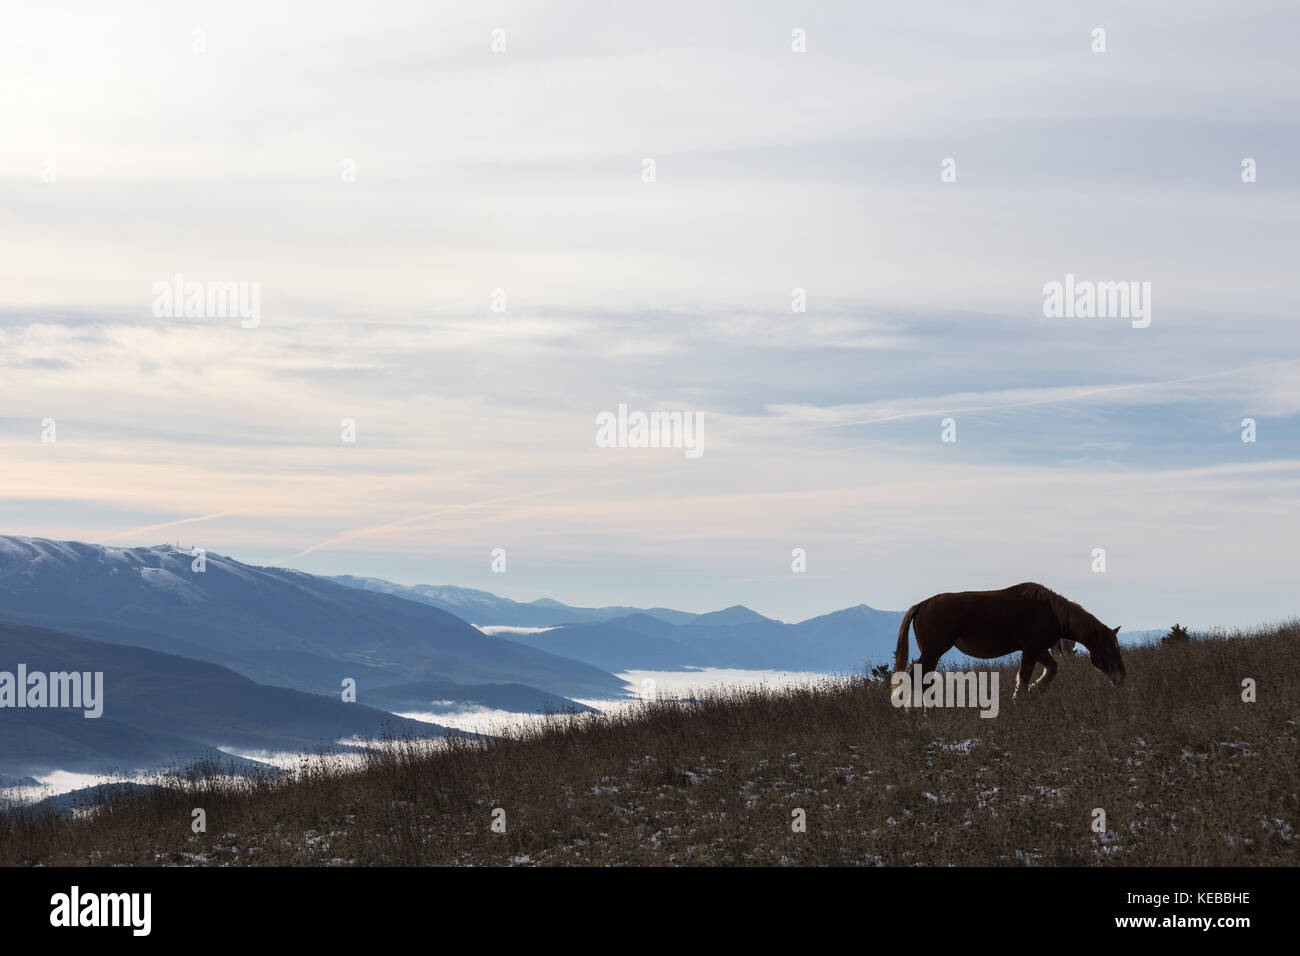 Un cheval rétroéclairé, mange de l'herbe, au sommet d'une montagne, avec quelques montagnes brumeuses et lointain sur l'arrière-plan Banque D'Images